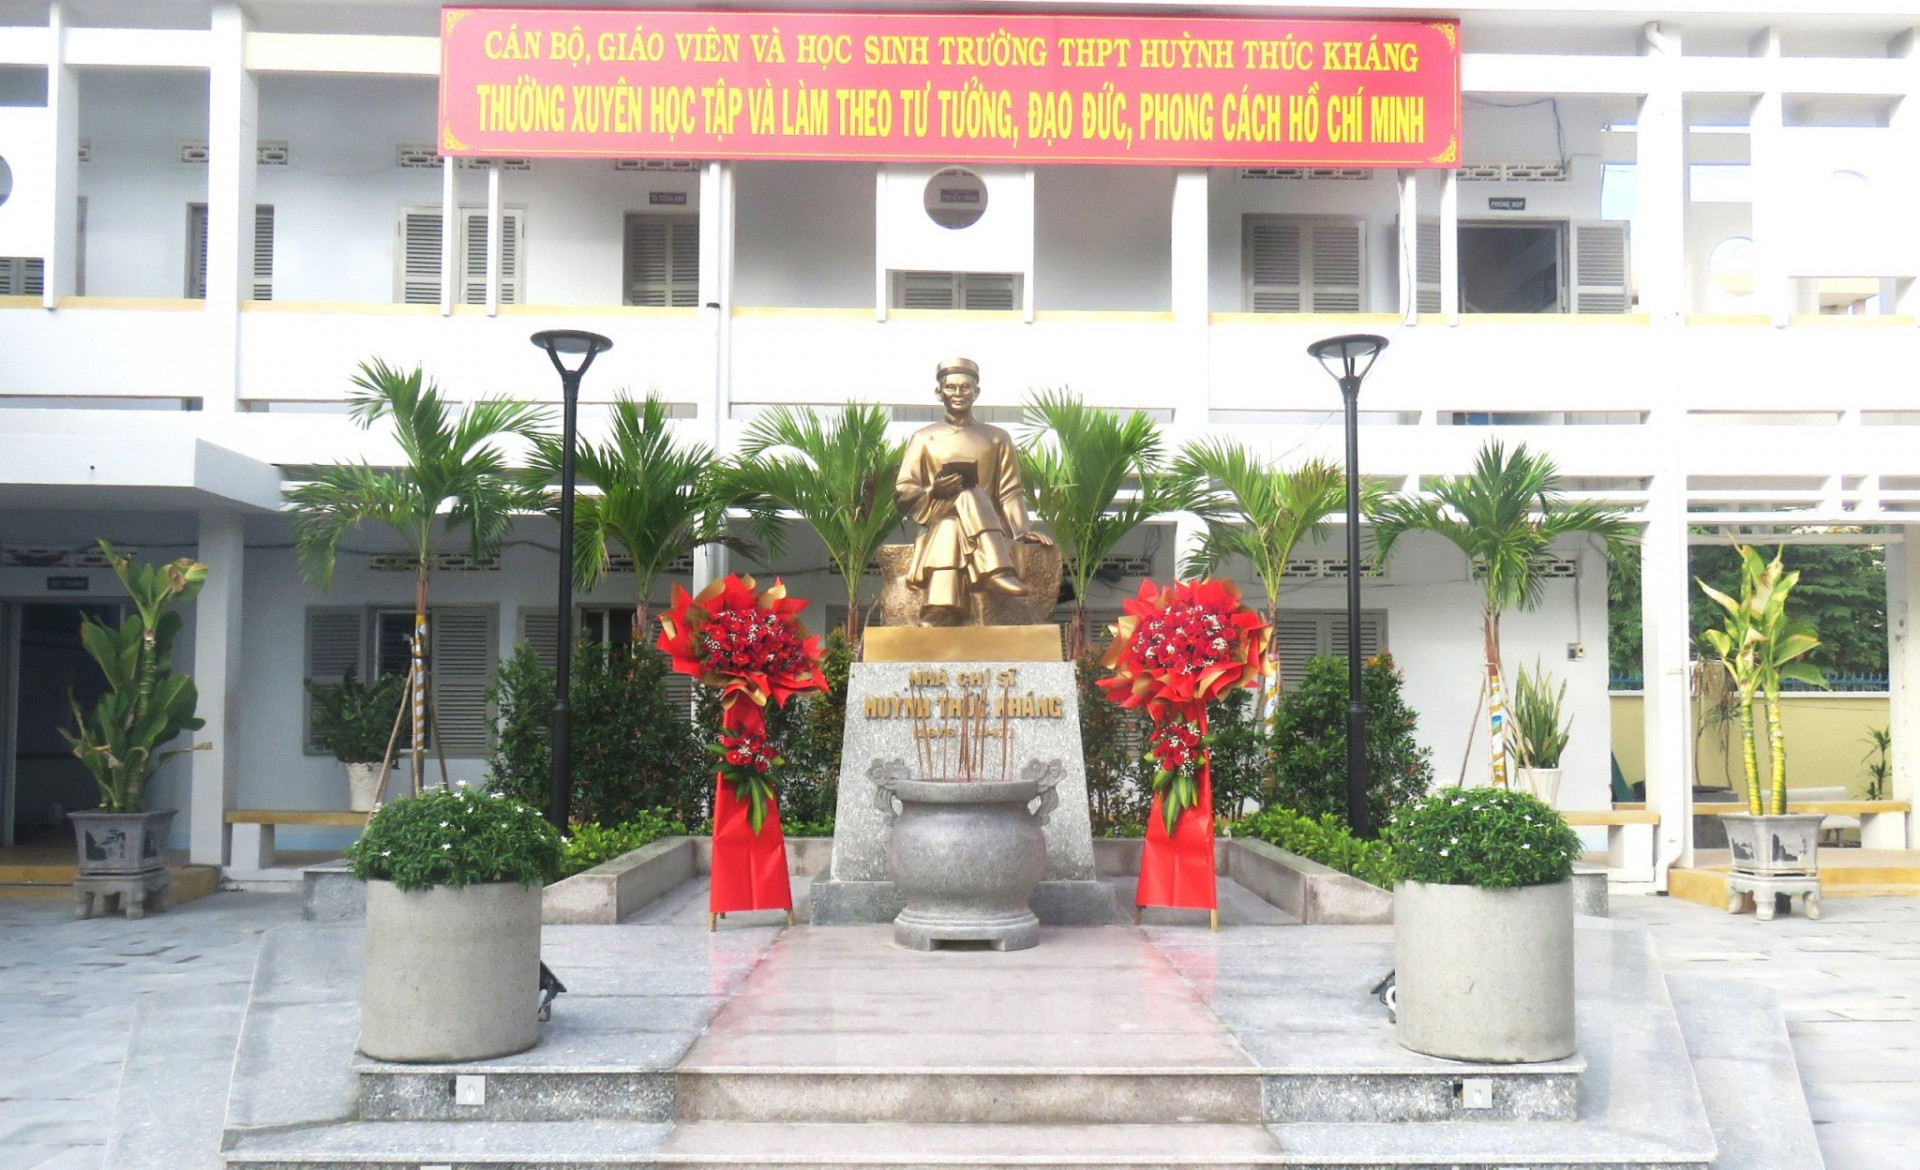 Công trình tượng Người chí sĩ yêu nước Huỳnh Thúc Kháng được hoàn thành đúng dịp khai giảng năm học mới của nhà trường.